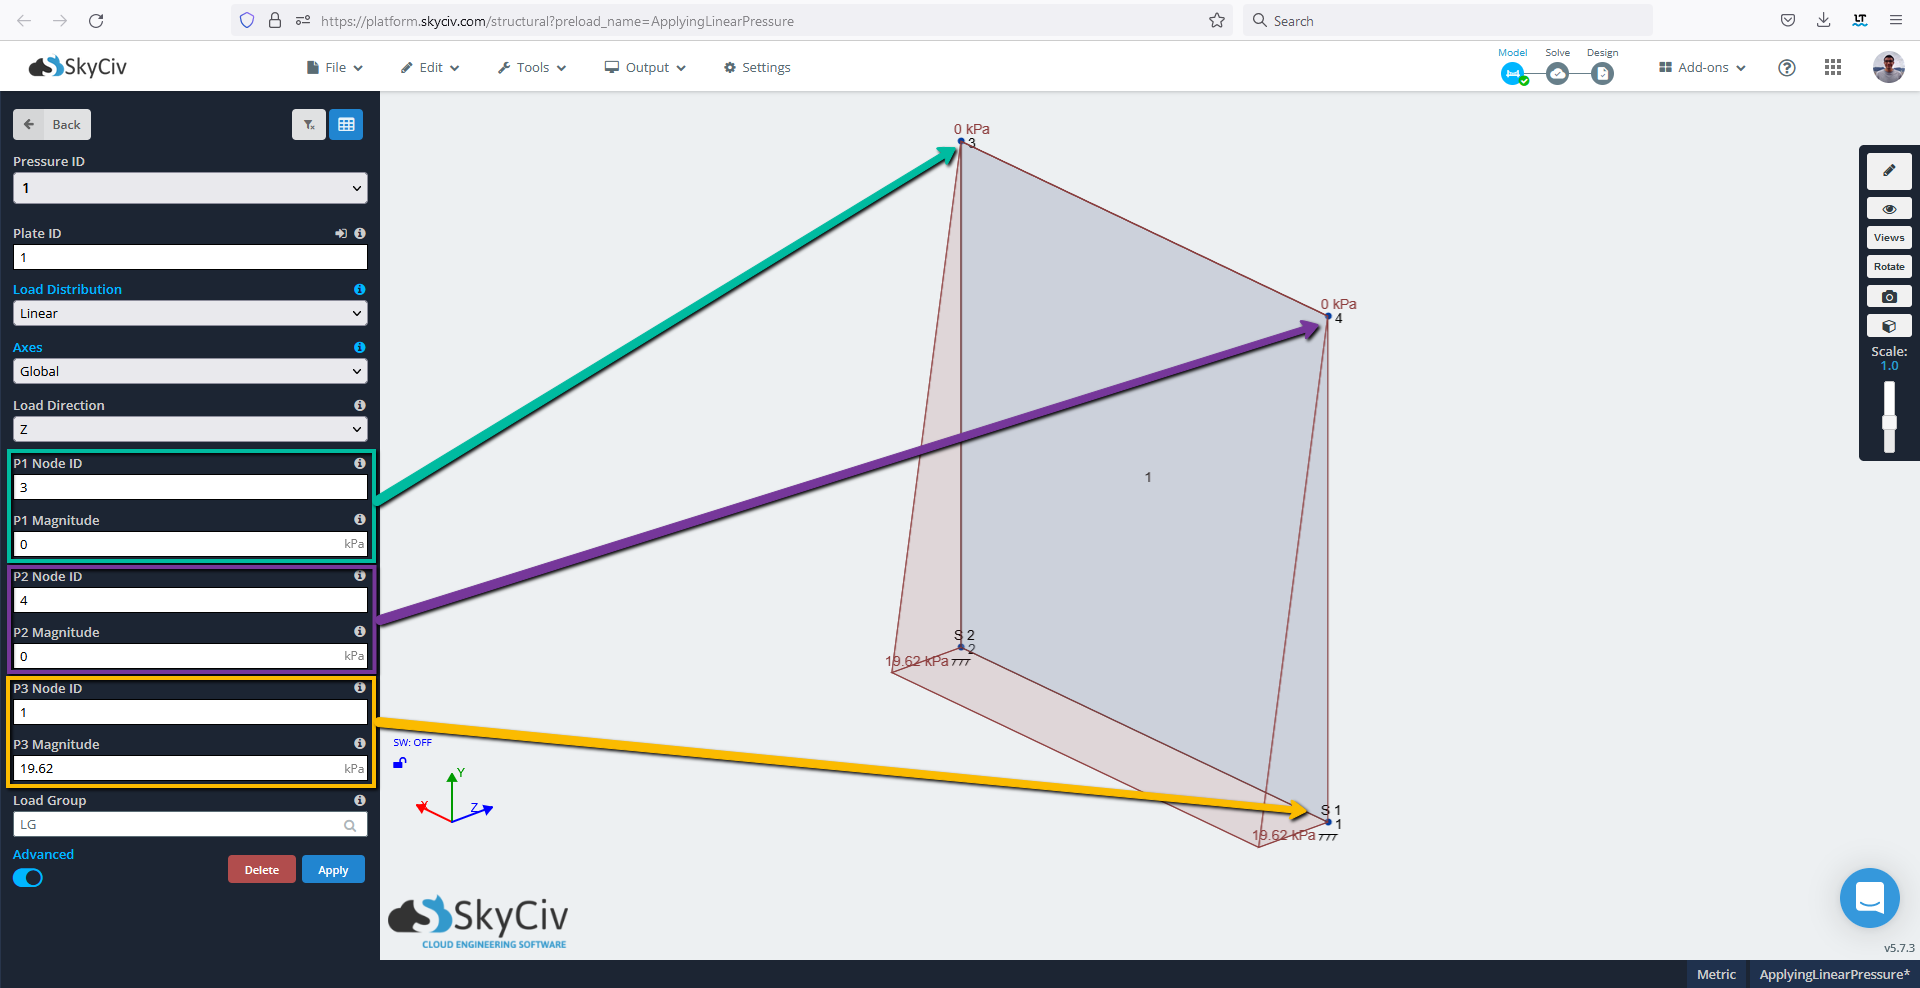 SkyCiv S3D 展示如何应用线性或可变压力 - 带箭头的节点